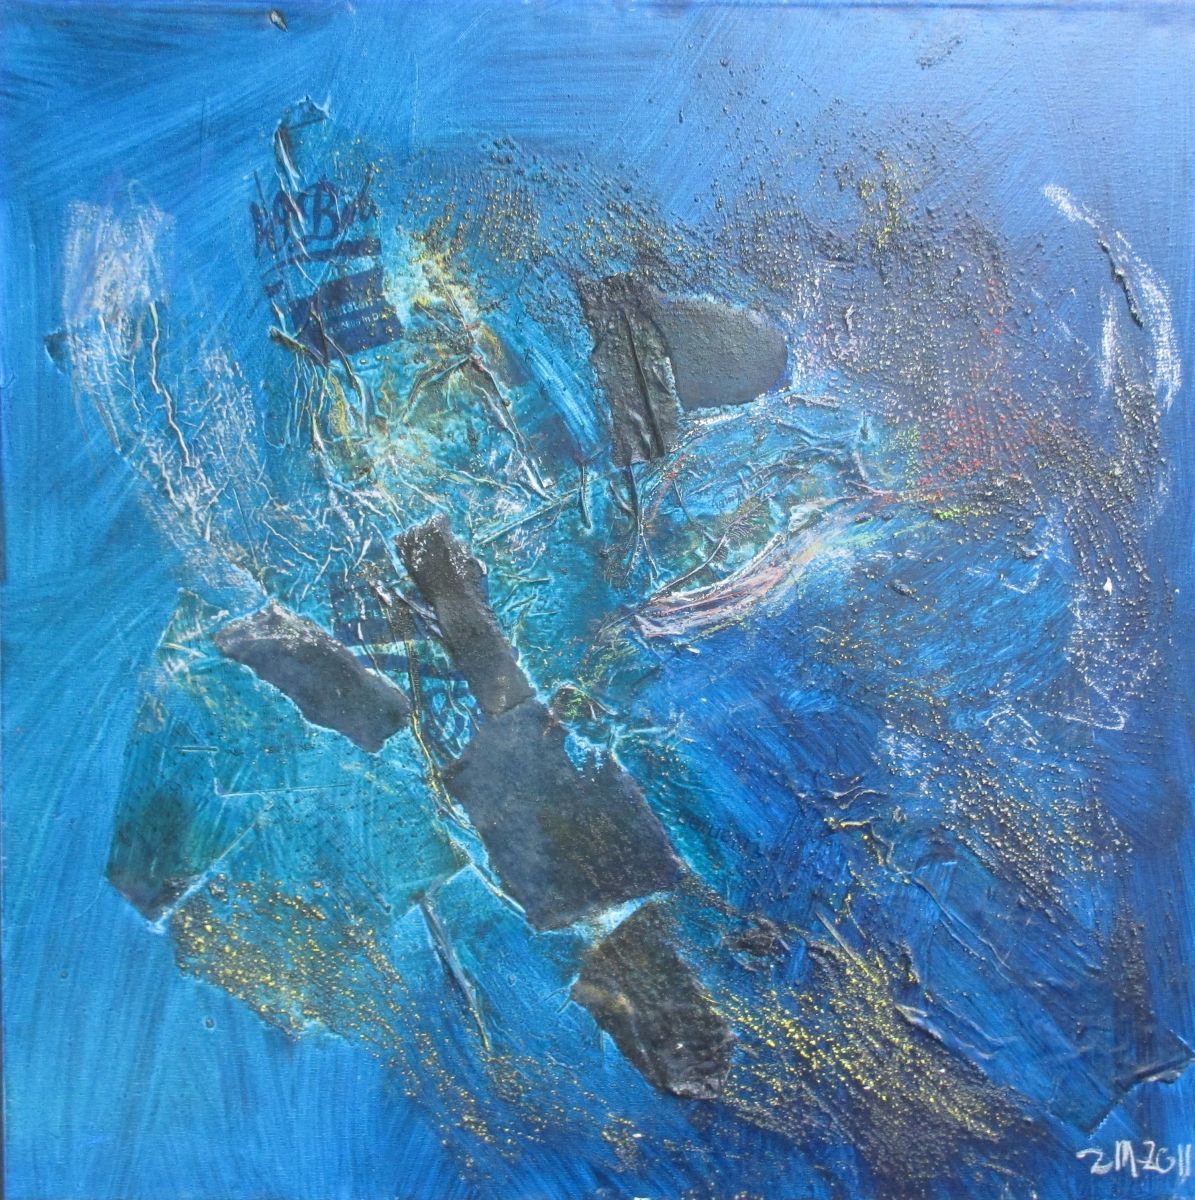 big blue mixedmedia oil on canvas by Sonja Zeltner-Muller